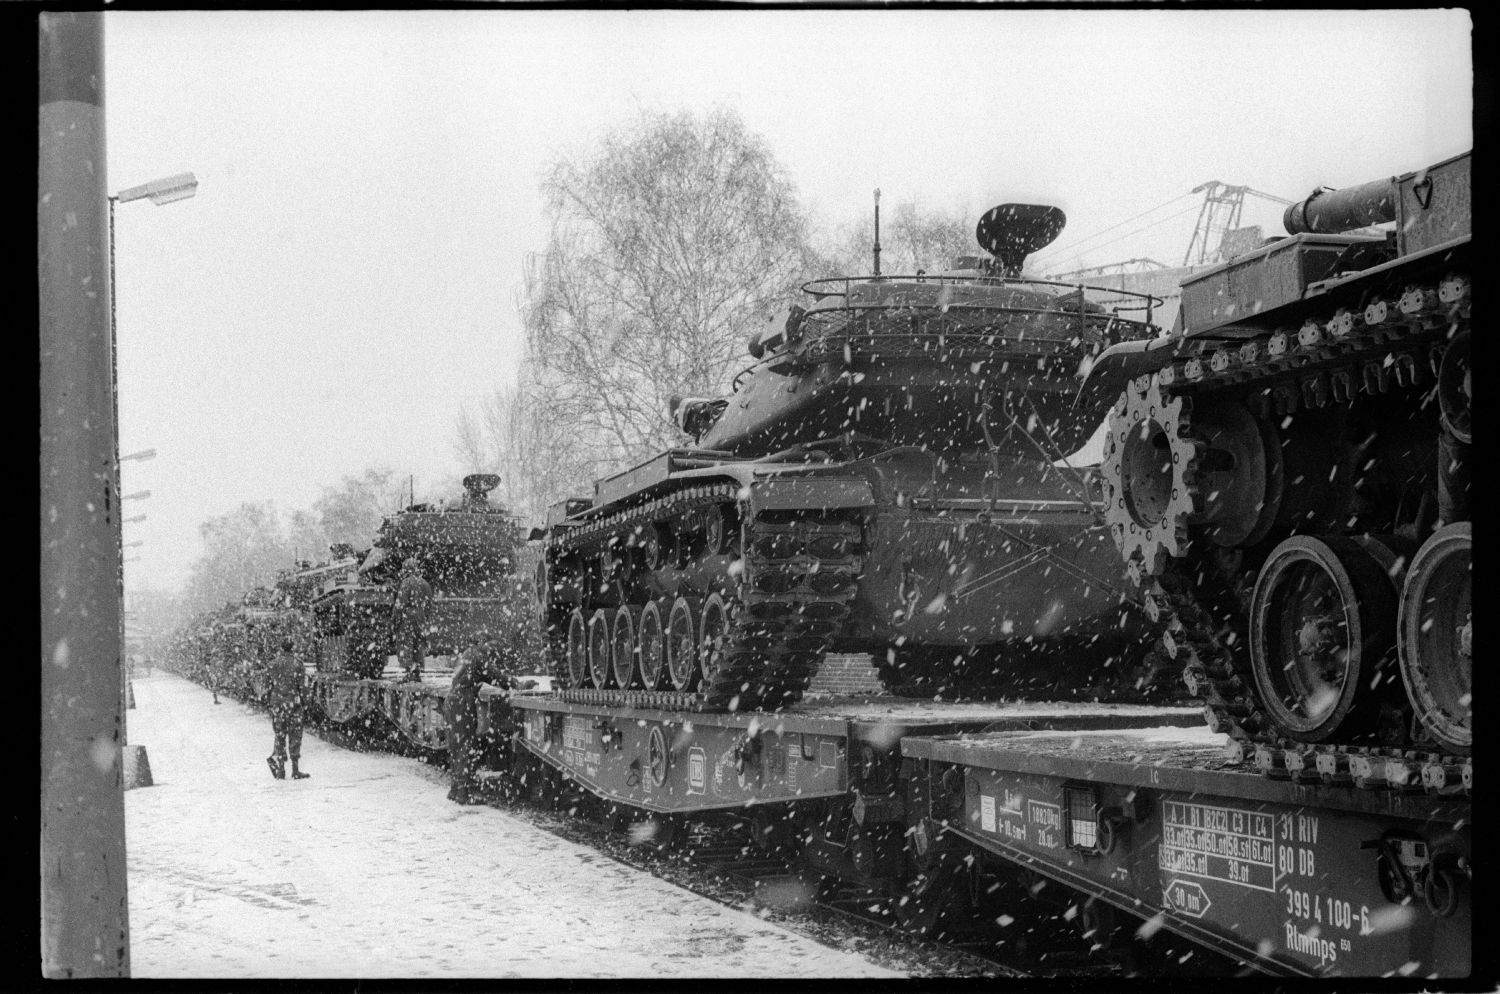 s/w-Fotografie: Verladung von Kampfpanzern der U.S. Army Berlin Brigade am Bahnhof Lichterfelde-West (AlliiertenMuseum/U.S. Army Photograph Public Domain Mark)